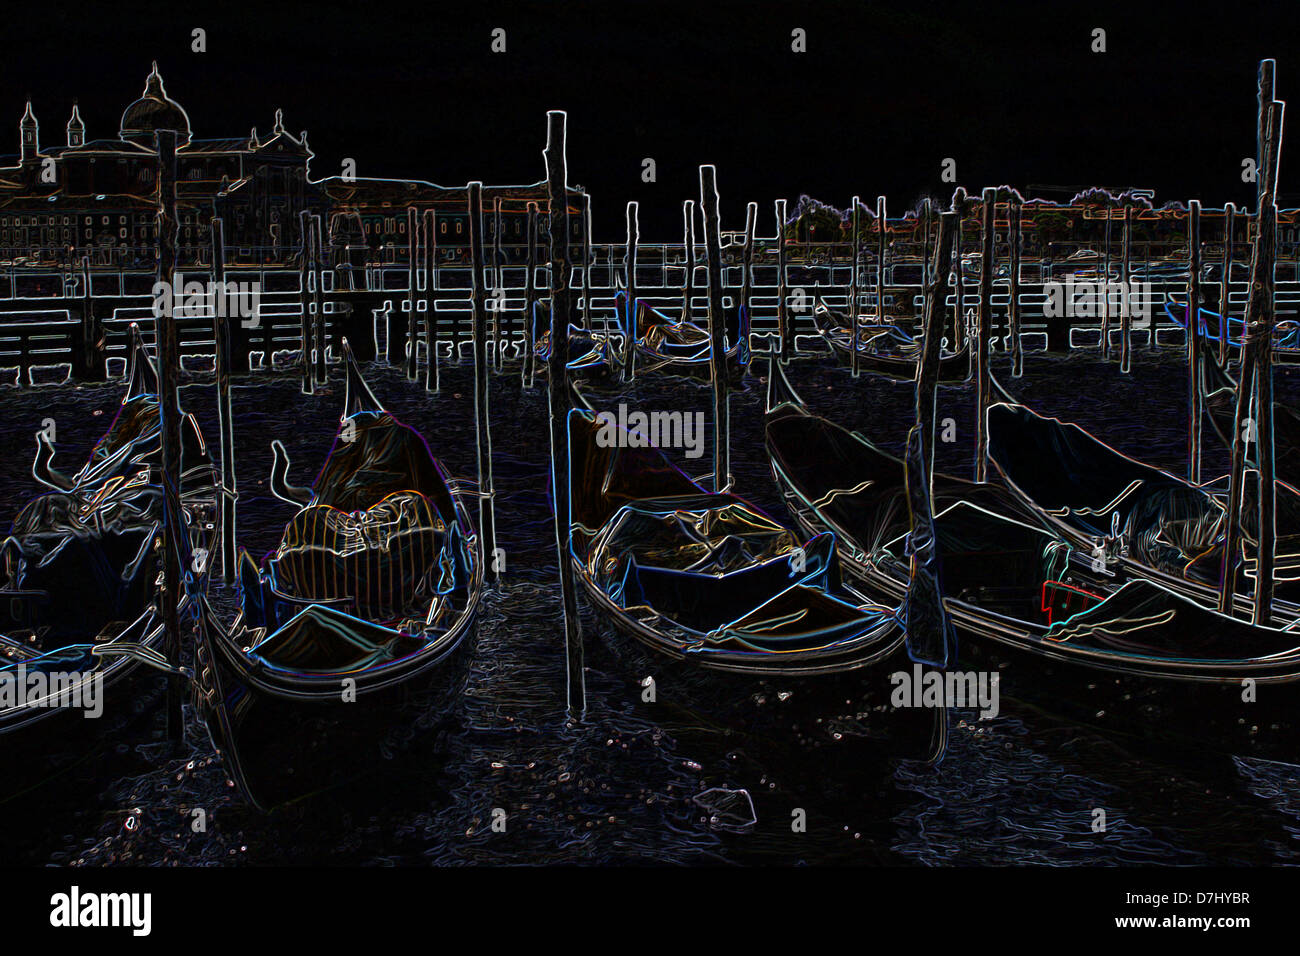 Un manipulé numériquement gravure couleur surréaliste comme image de la gondole à Venise. Banque D'Images